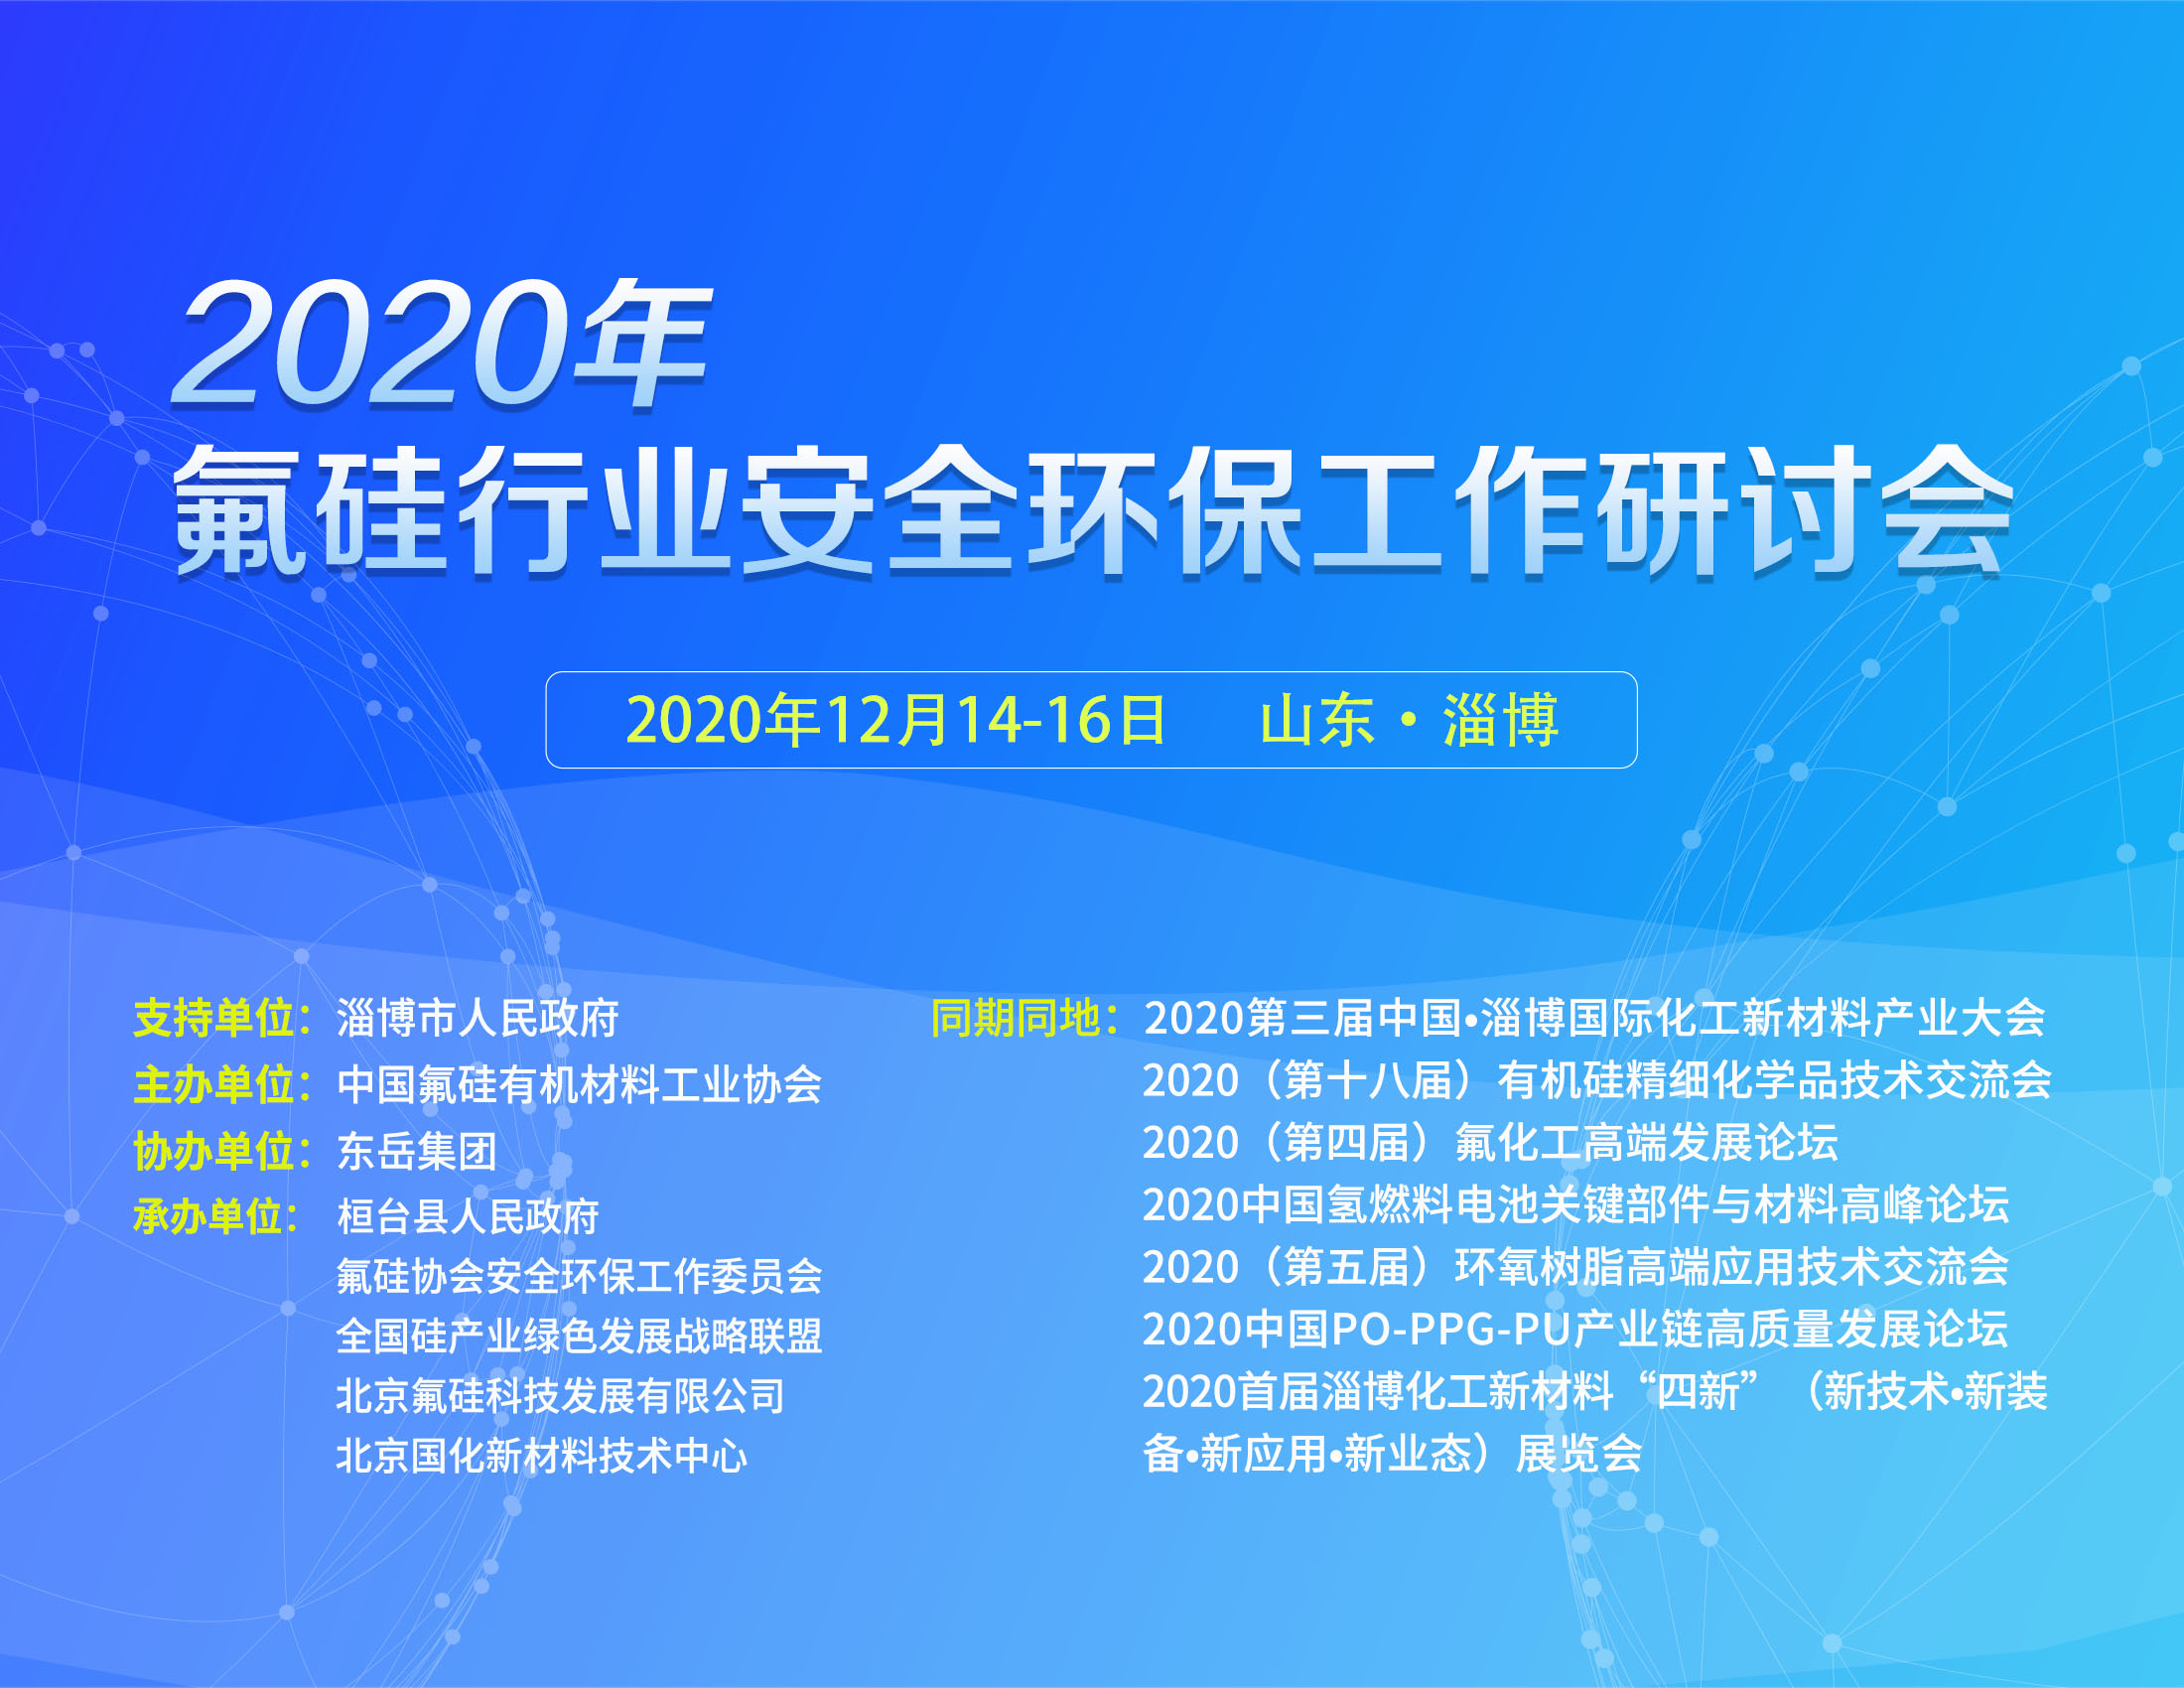 2020年氟硅行业安全环保工作研讨会